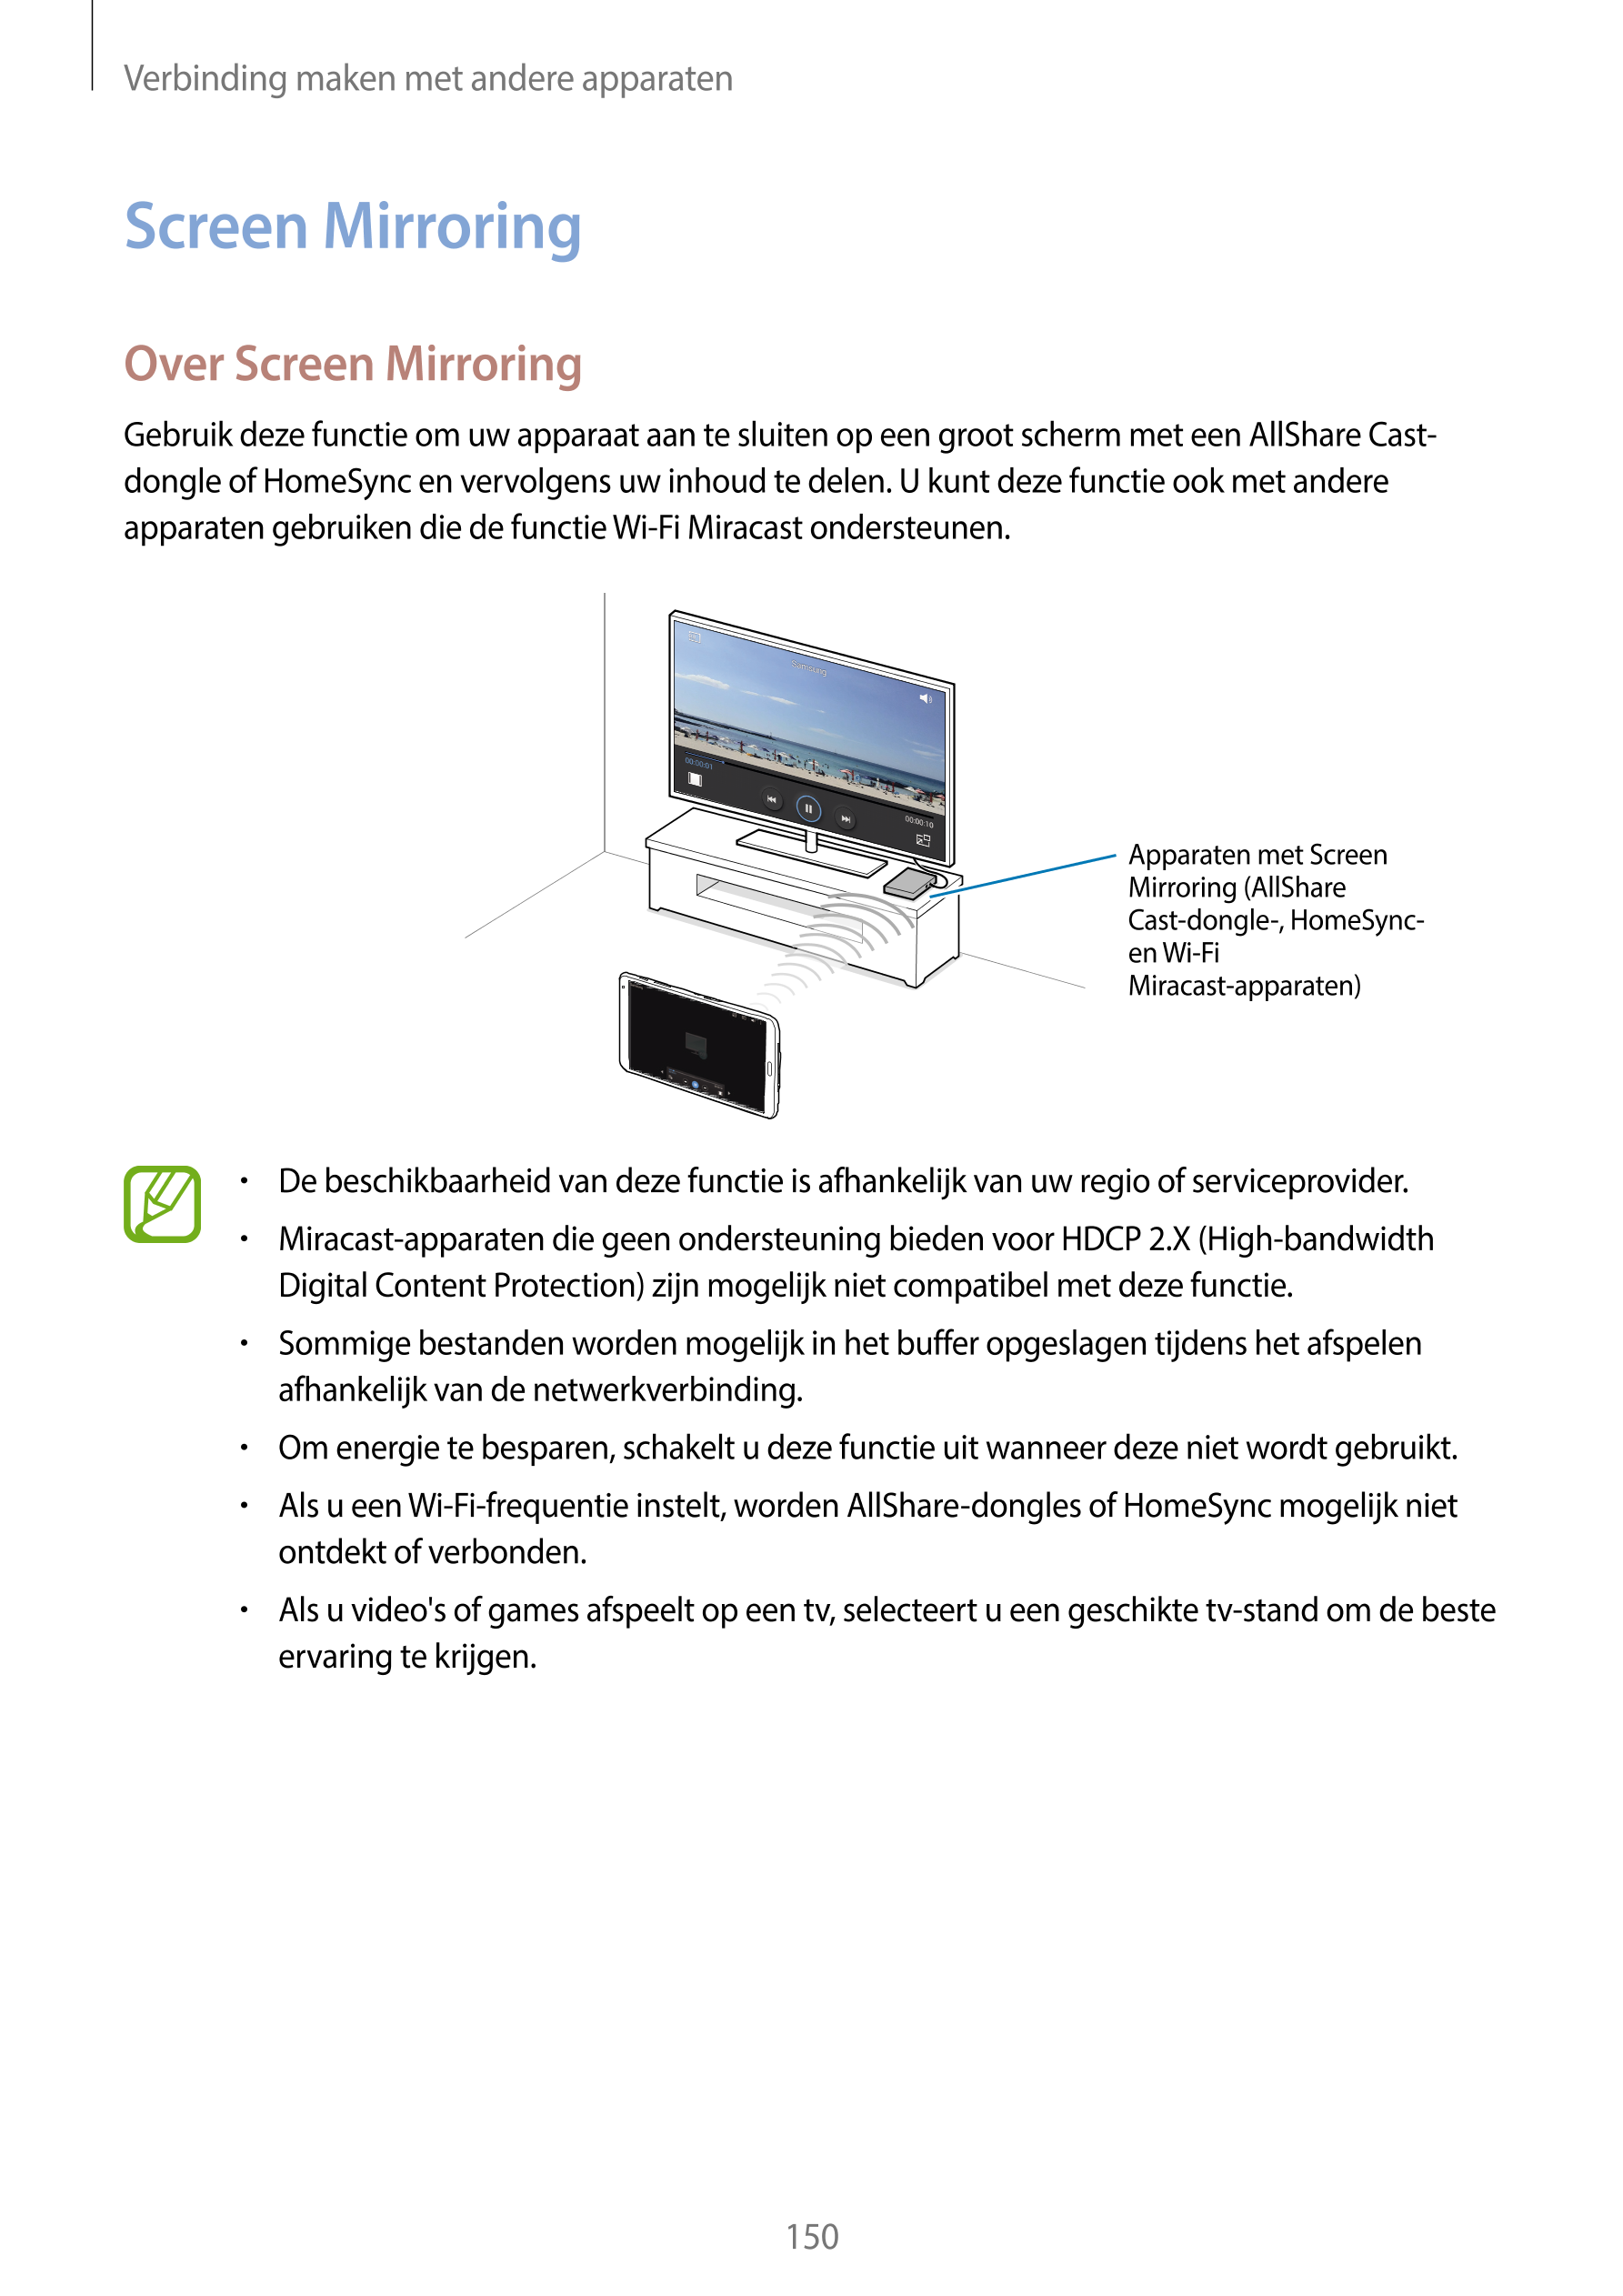 Verbinding maken met andere apparaten
Screen Mirroring
Over Screen Mirroring
Gebruik deze functie om uw apparaat aan te sluiten 